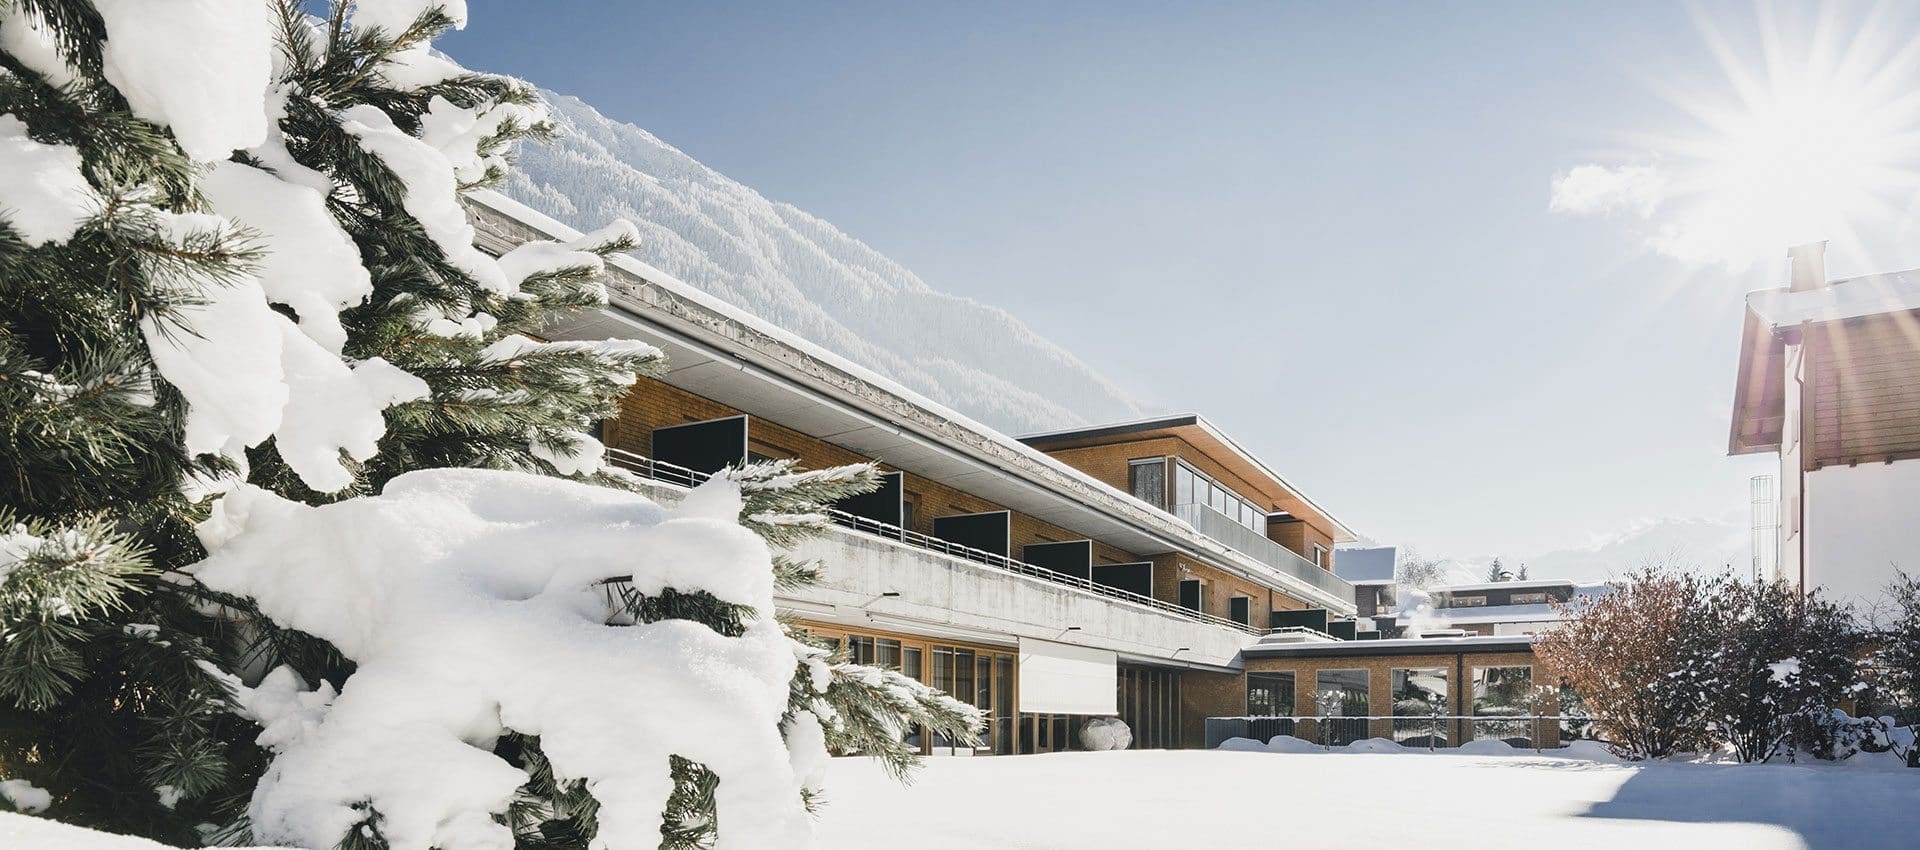 4 Sterne Superior Alpenhotel in Schruns, Vorarlberg